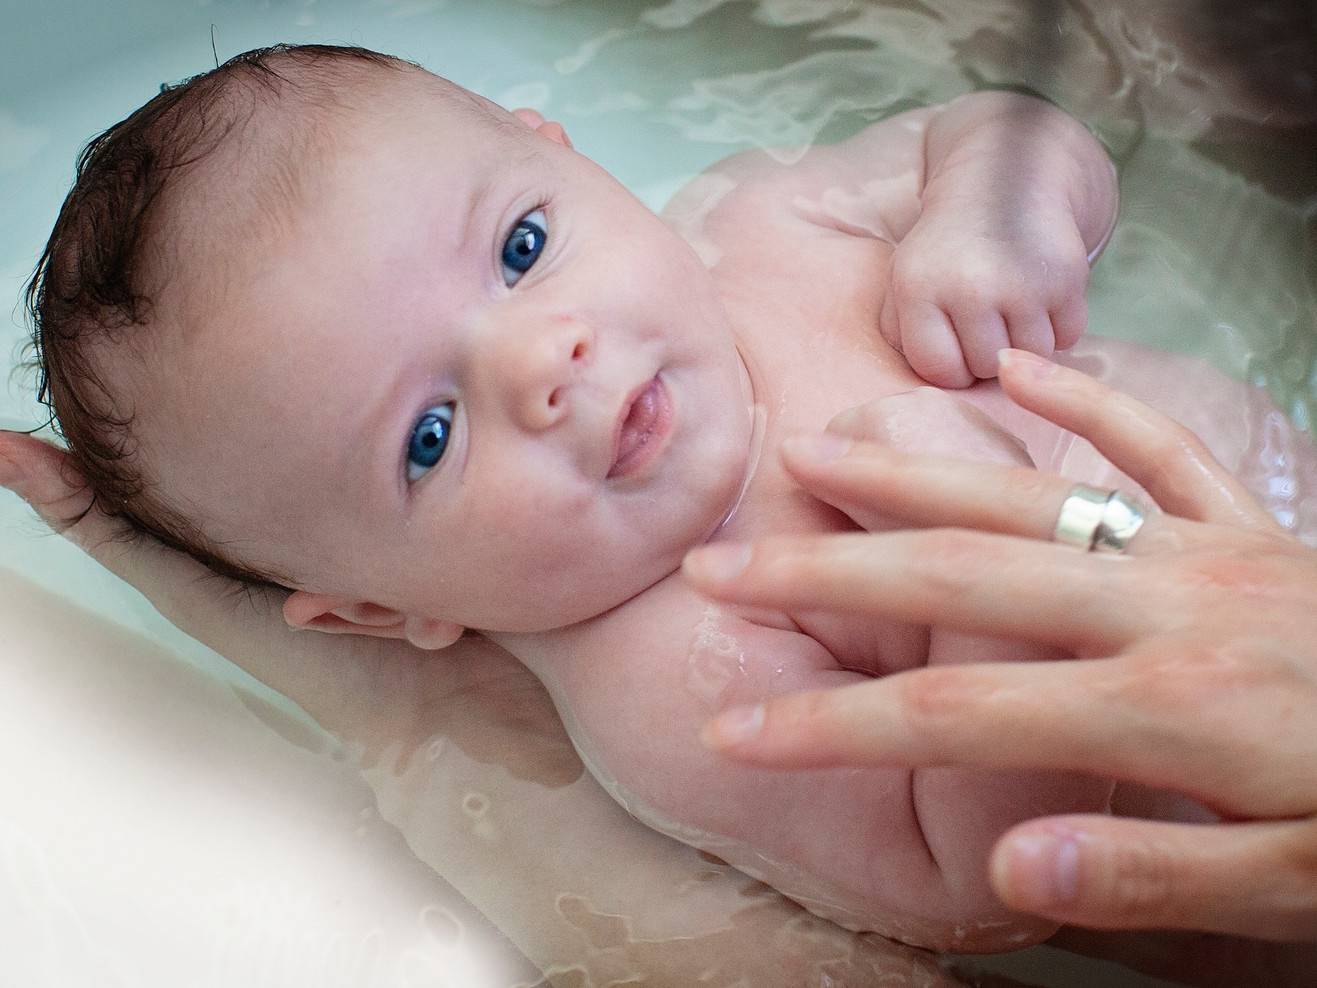 Вода в уши новорожденному при купании. Ушки у новорожденных при купании. Попала вода в ухо новорожденному при купании. Новорожденному в ушки попала вода. Купание новорожденного уши